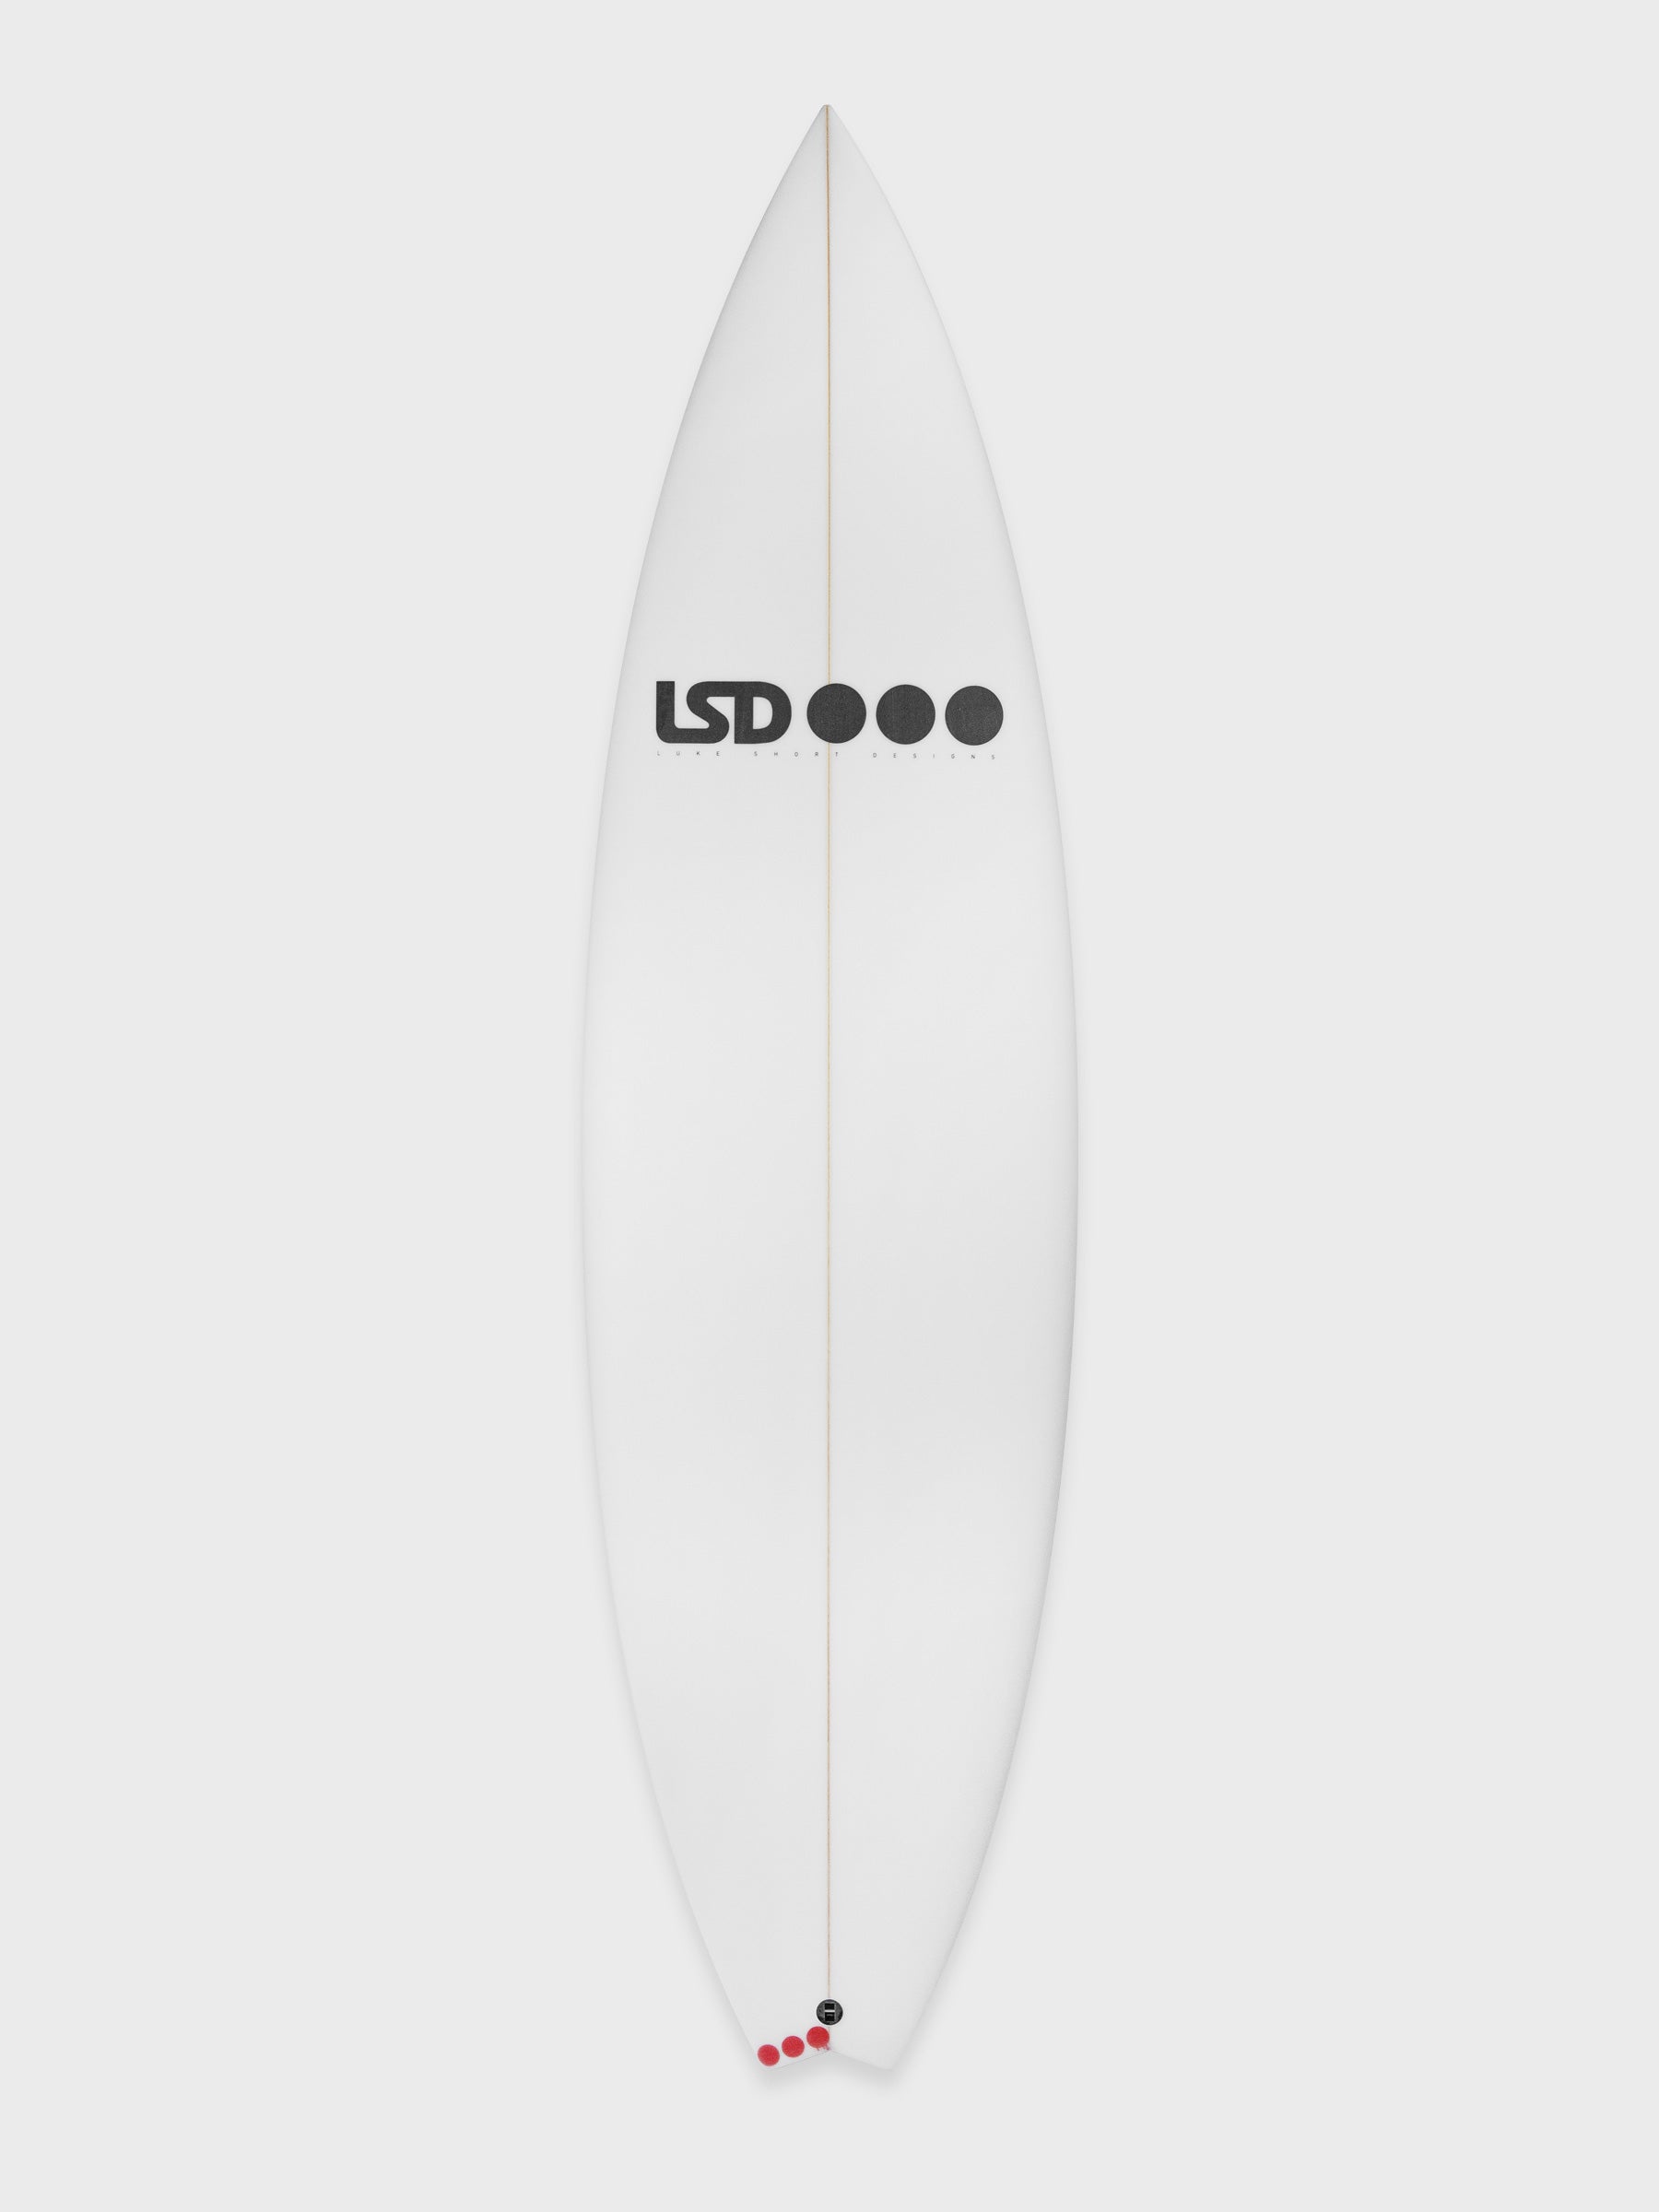 LSD Surfboards - Luke Short Designs